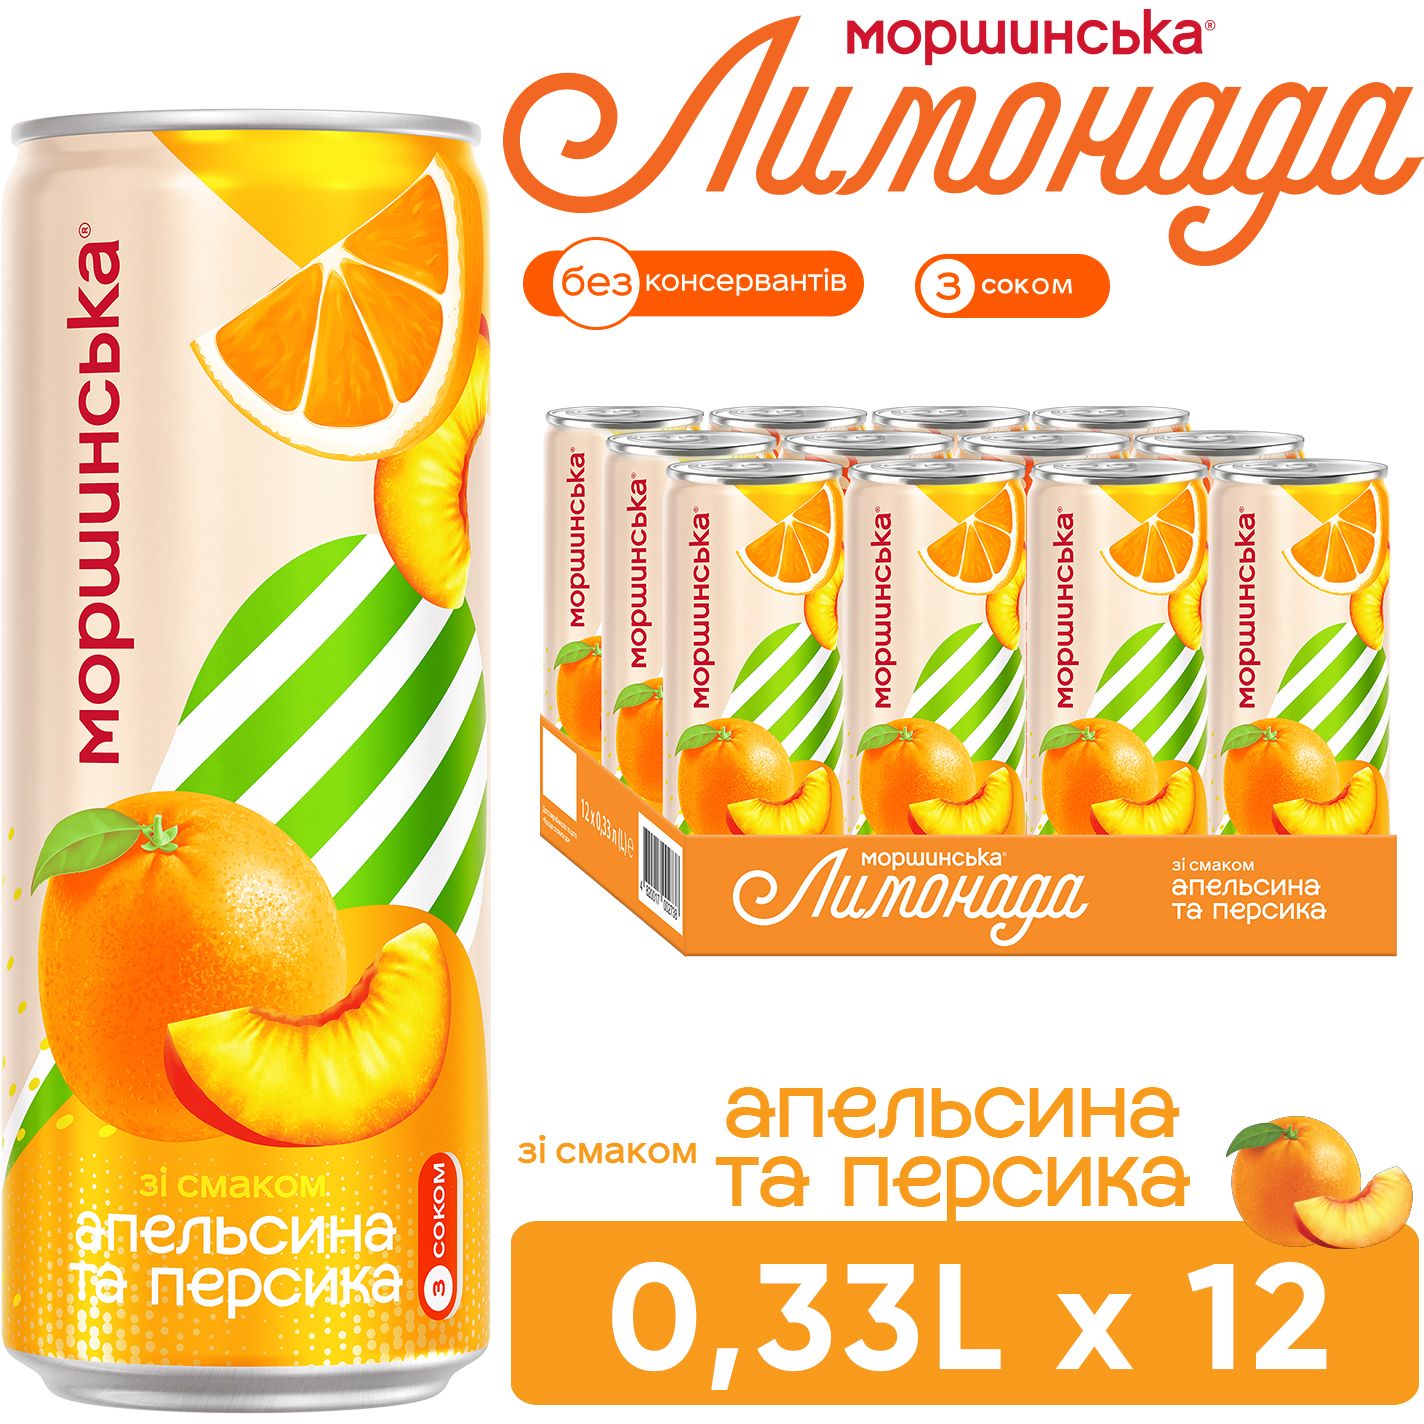 Напиток Моршинская Лимонада Апельсин-Персик среднегазированный 0.33 л - фото 5